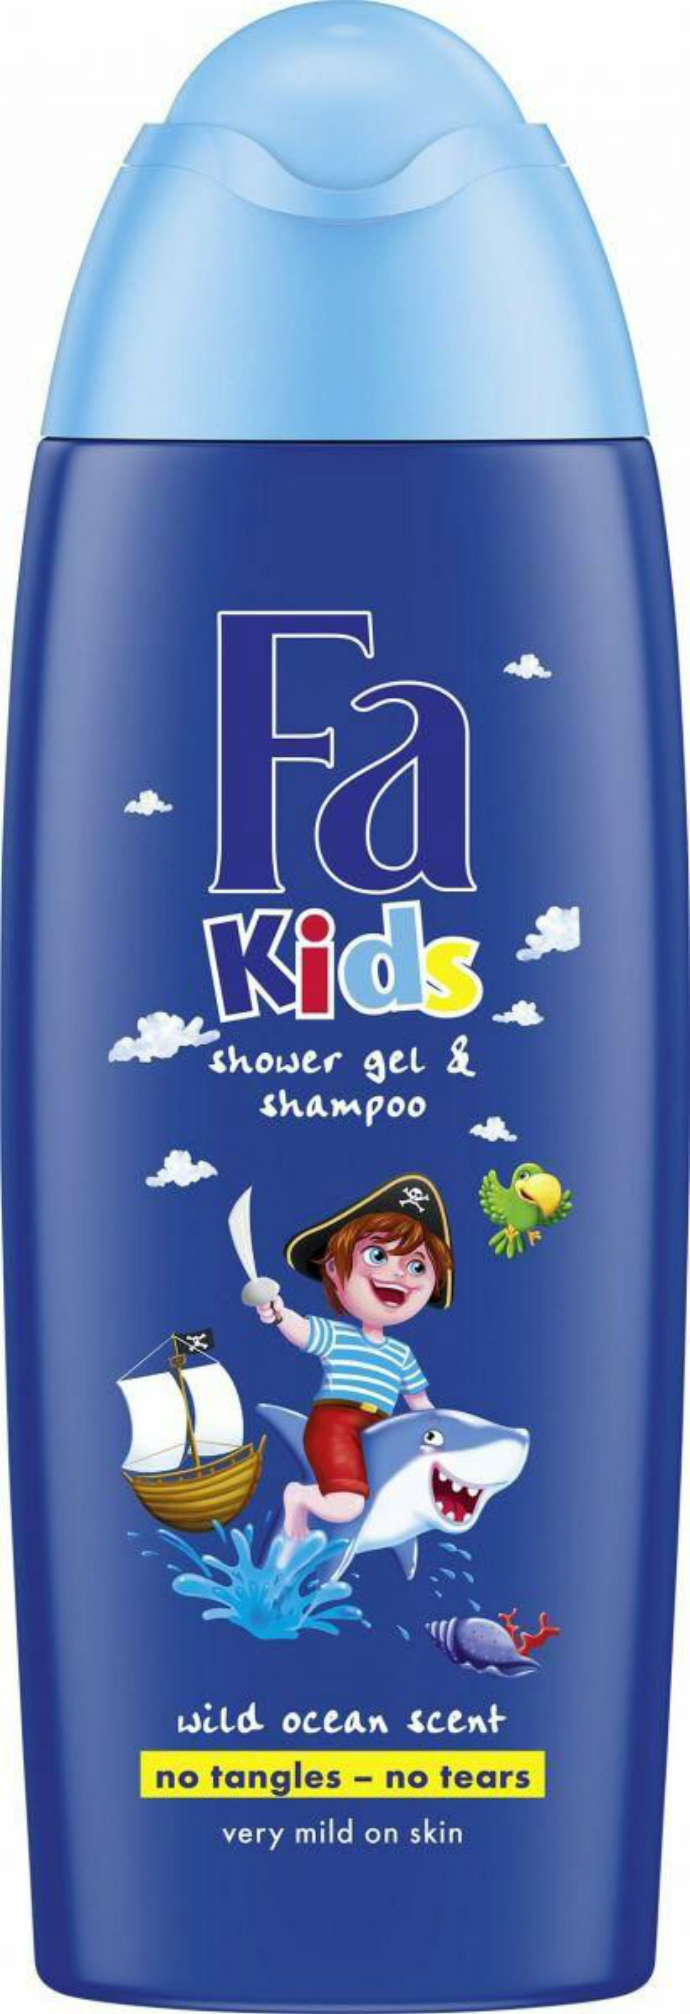 FA Kids Pirate Shower Gel 250 ml (MOS)